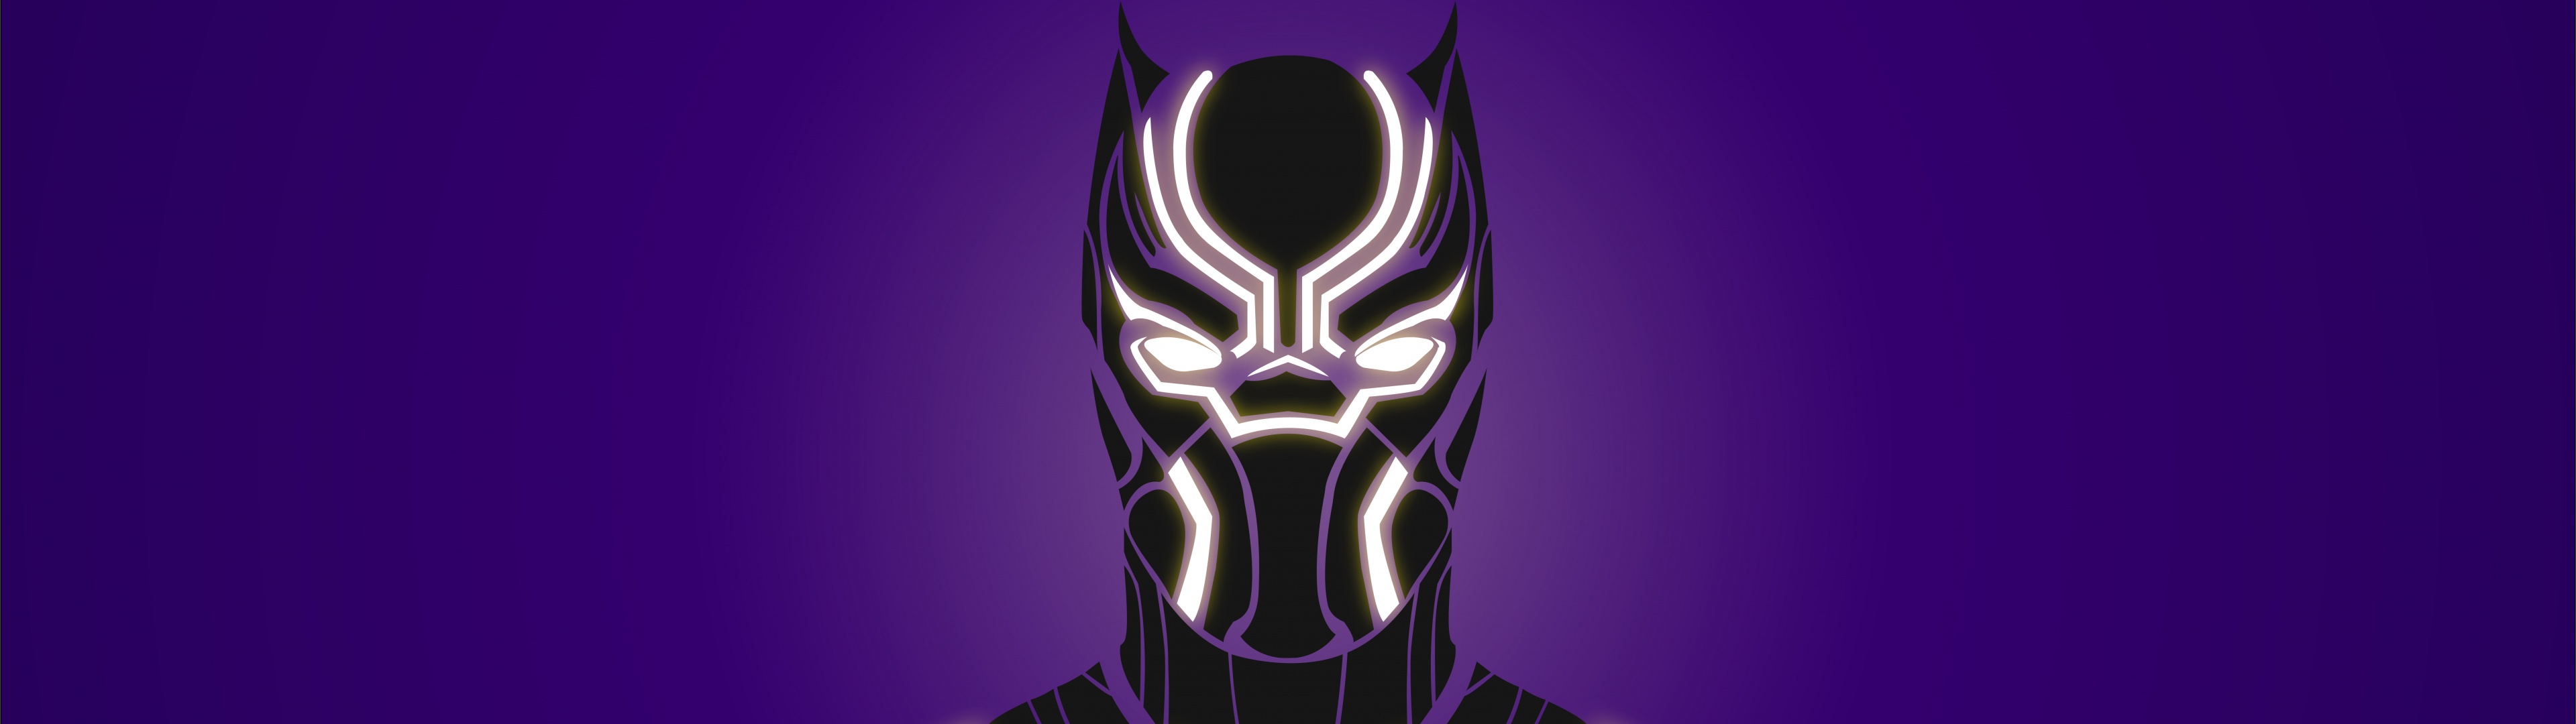 Black Panther: Wakanda Forever Wallpaper 4K, Logo, 2022 Movies